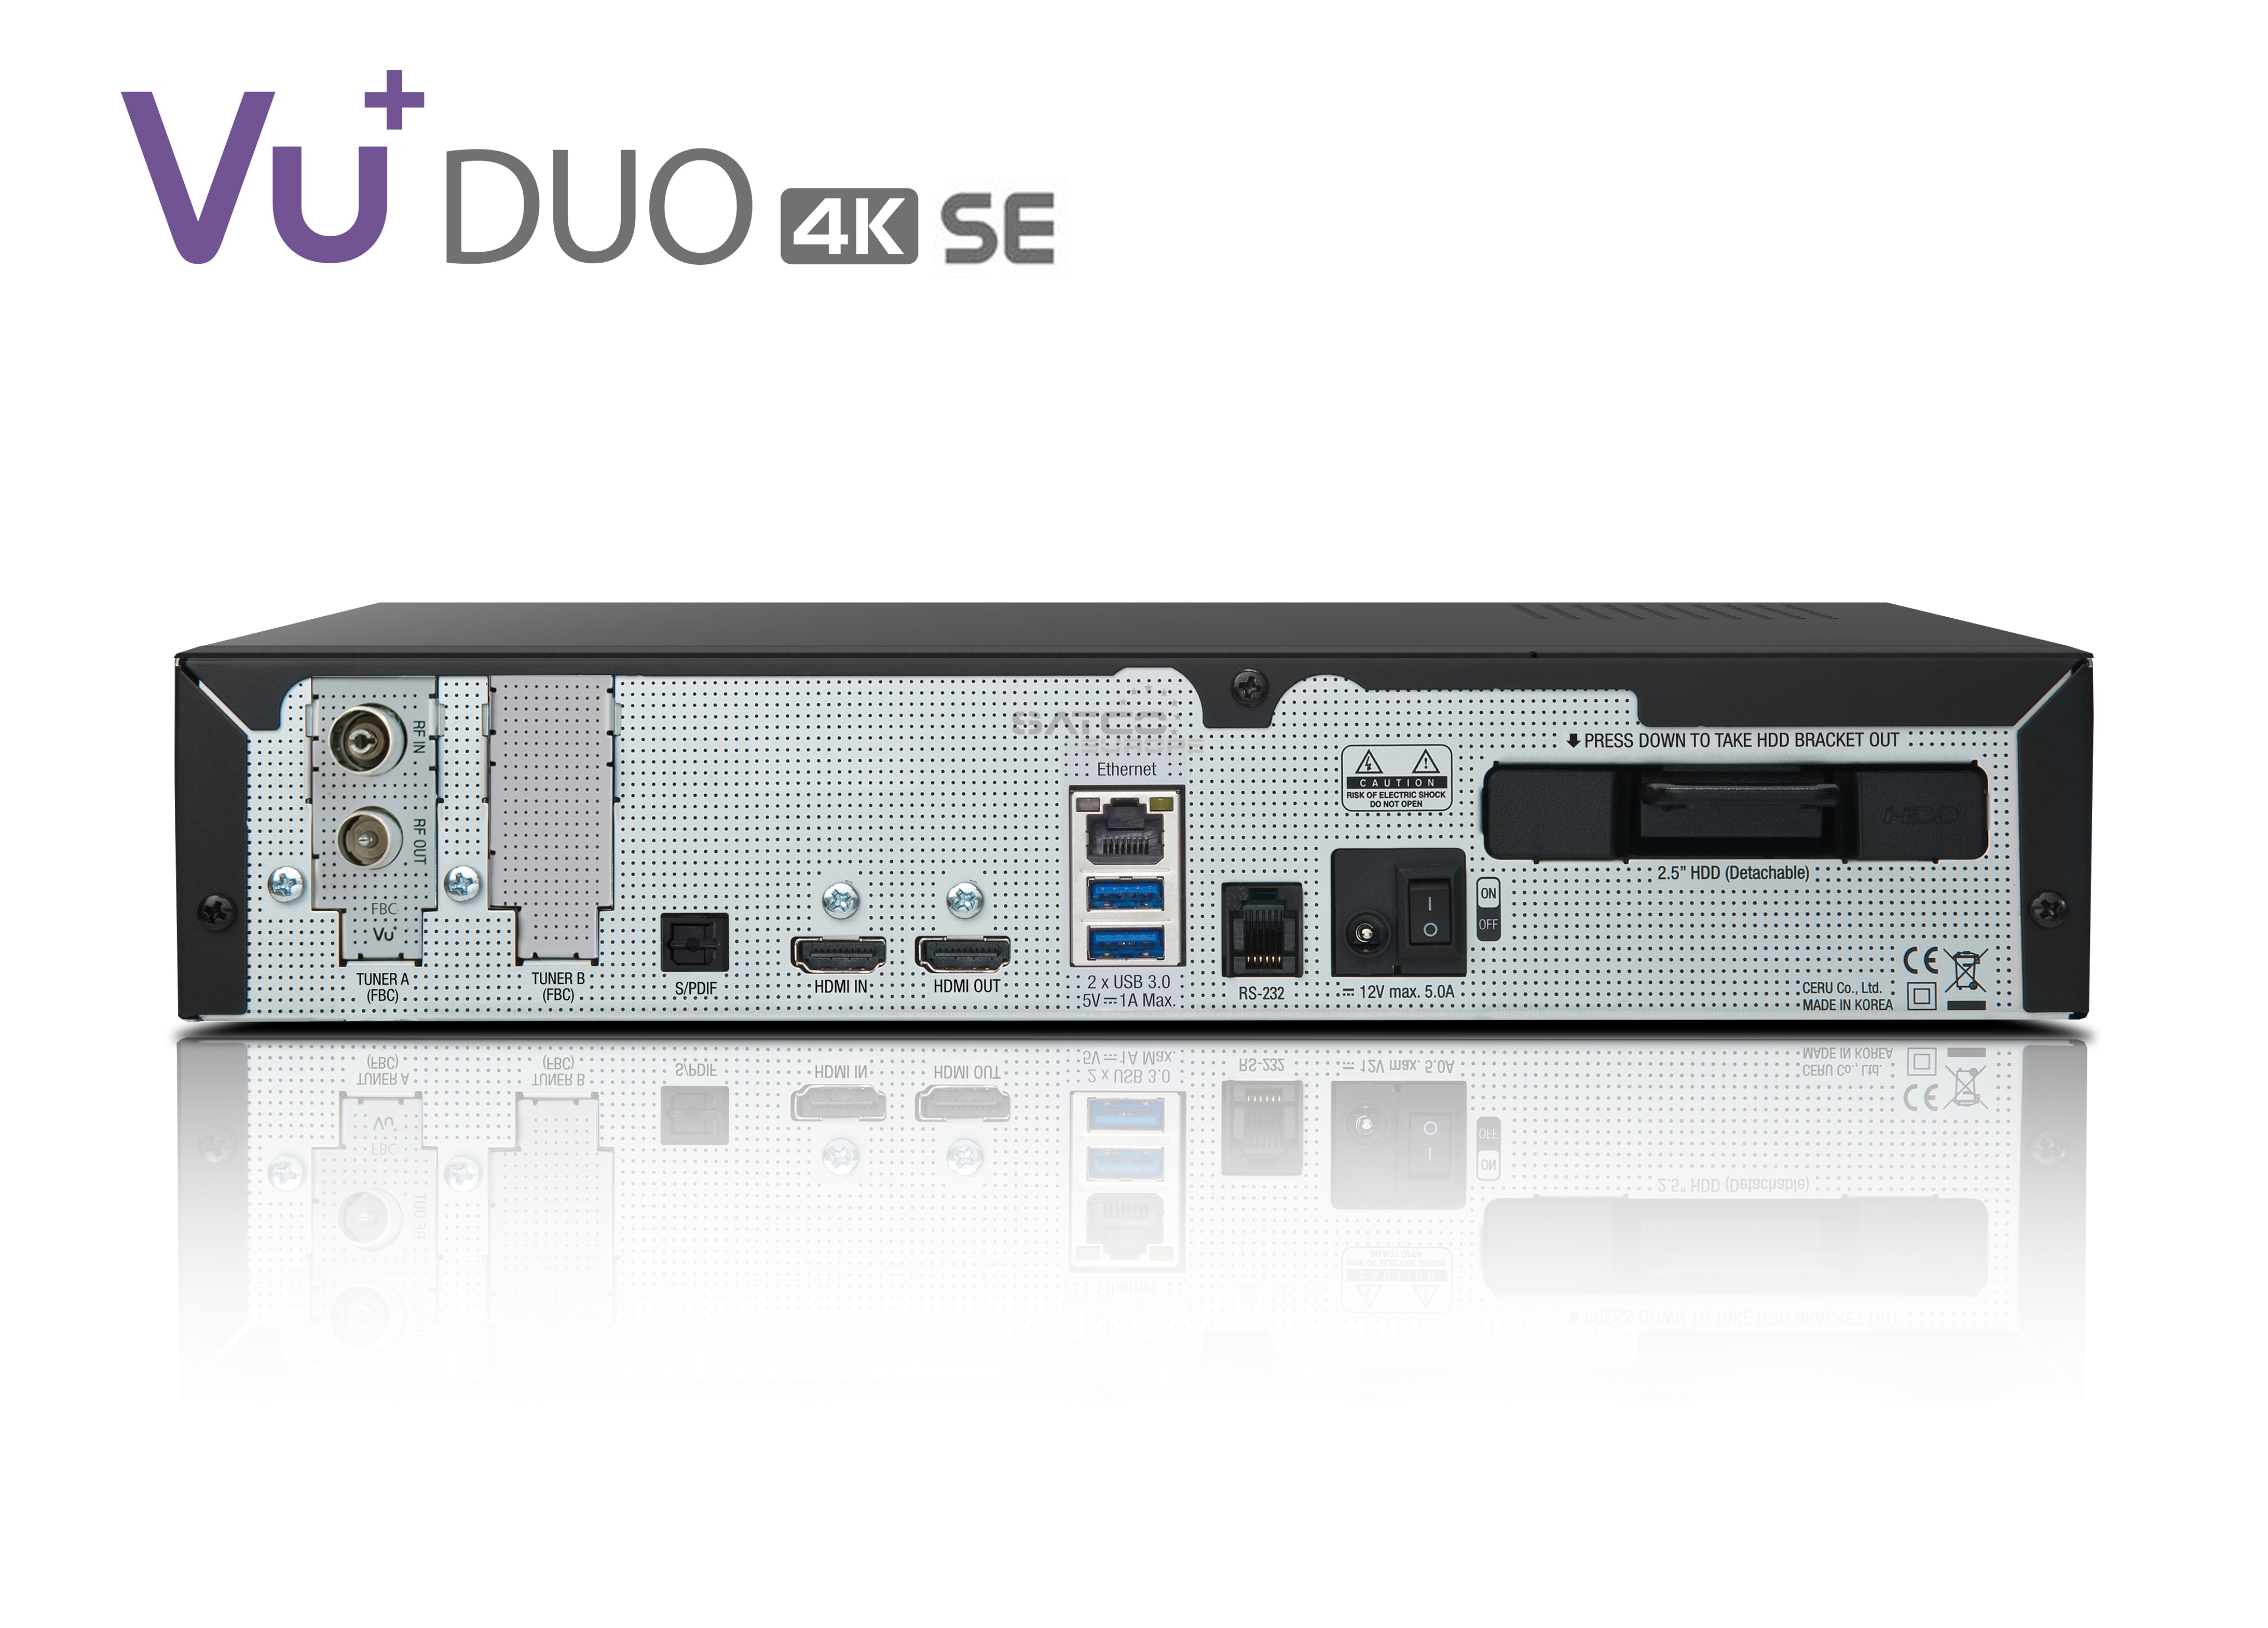 VU+ Duo 4K SE BT 1x DVB-C FBC Tuner 500 GB HDD Linux Receiver UHD 2160p